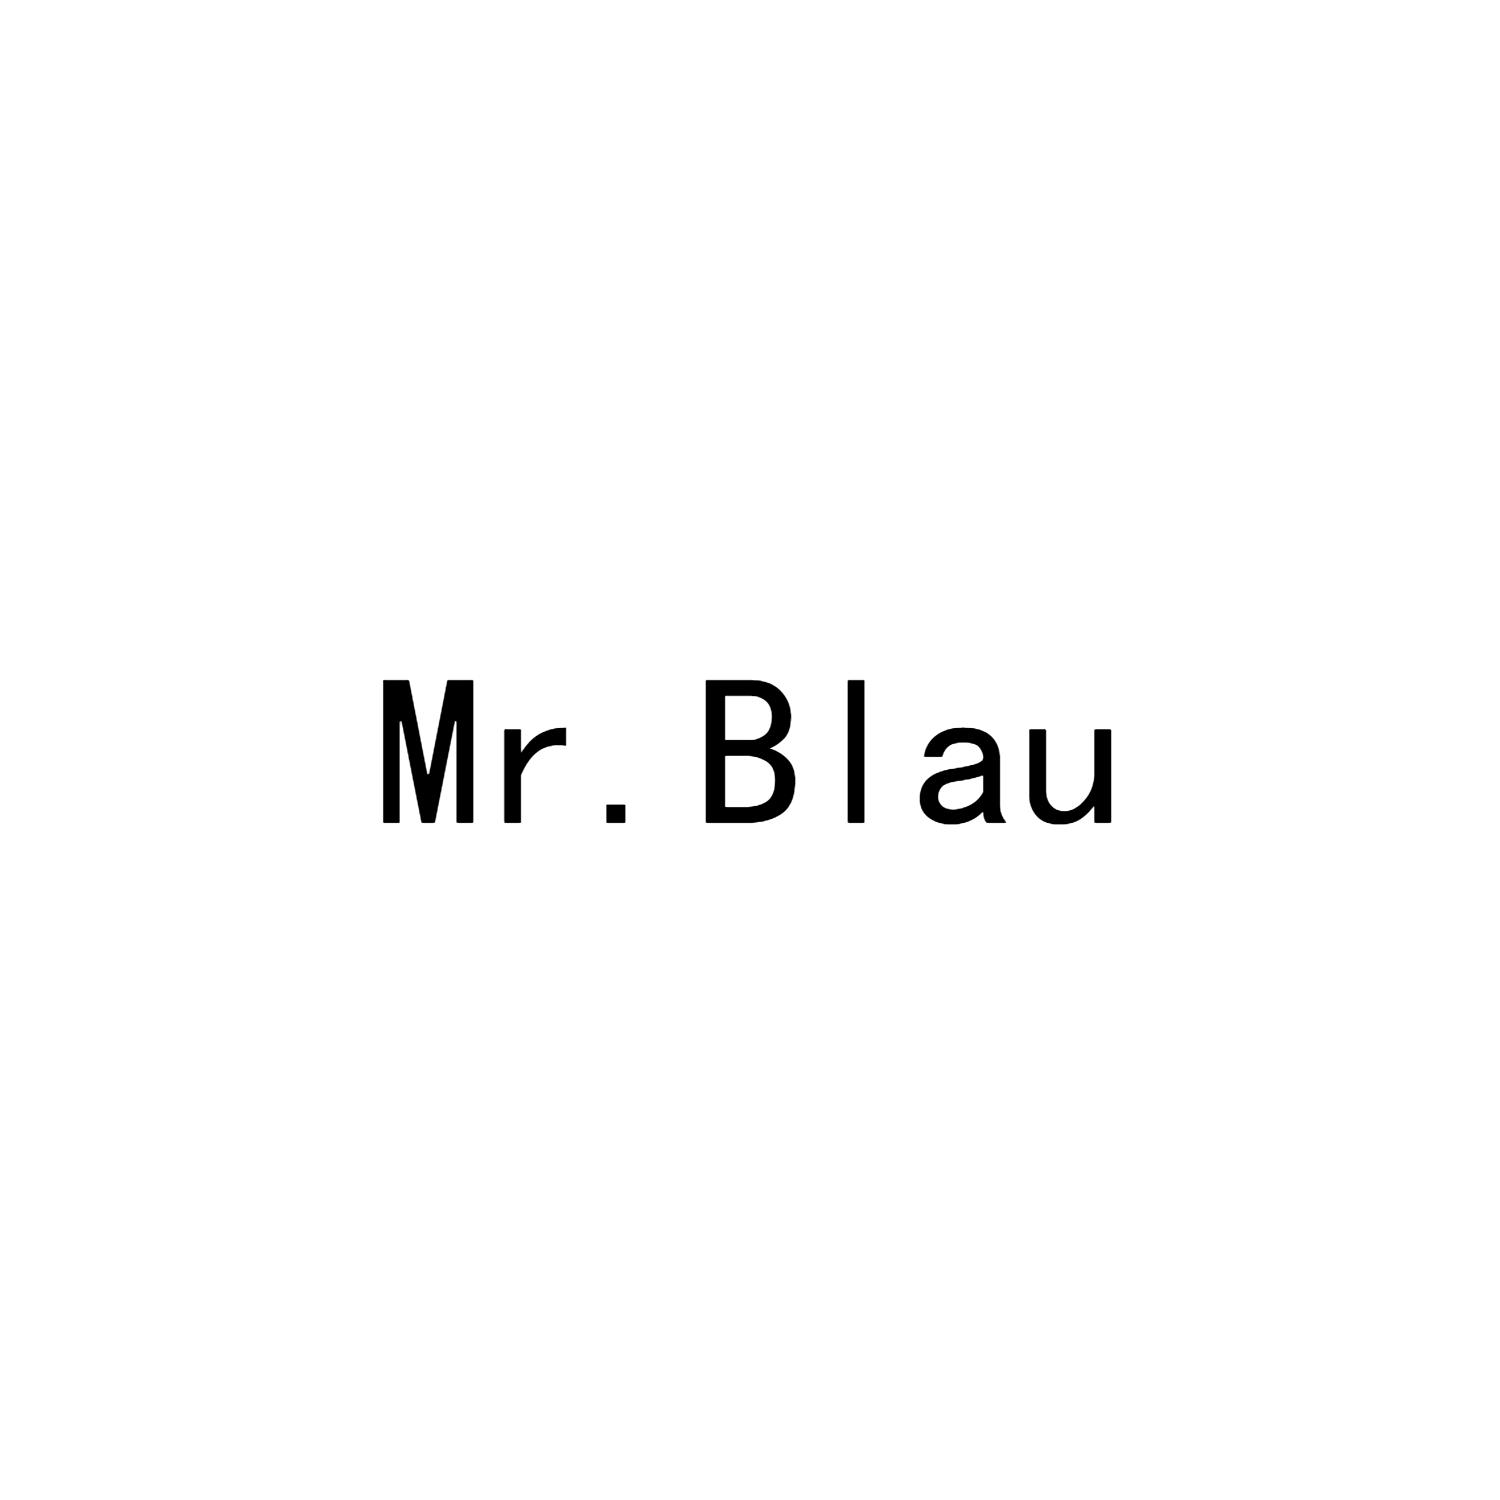 MR. BLAU